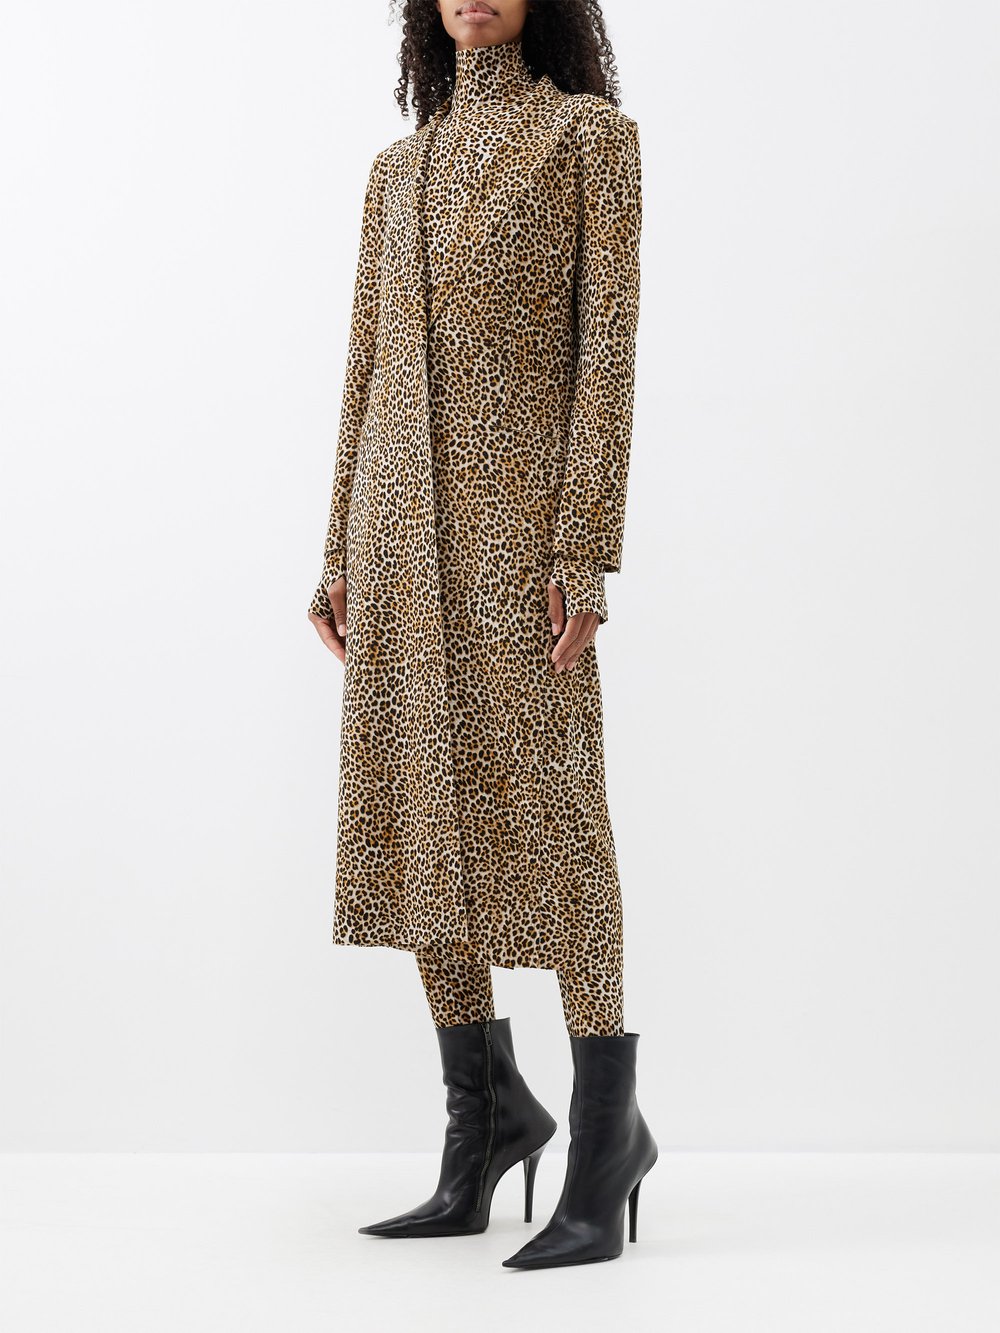 Однобортное трикотажное пальто с леопардовым принтом Norma Kamali, коричневый пальто с леопардовым принтом